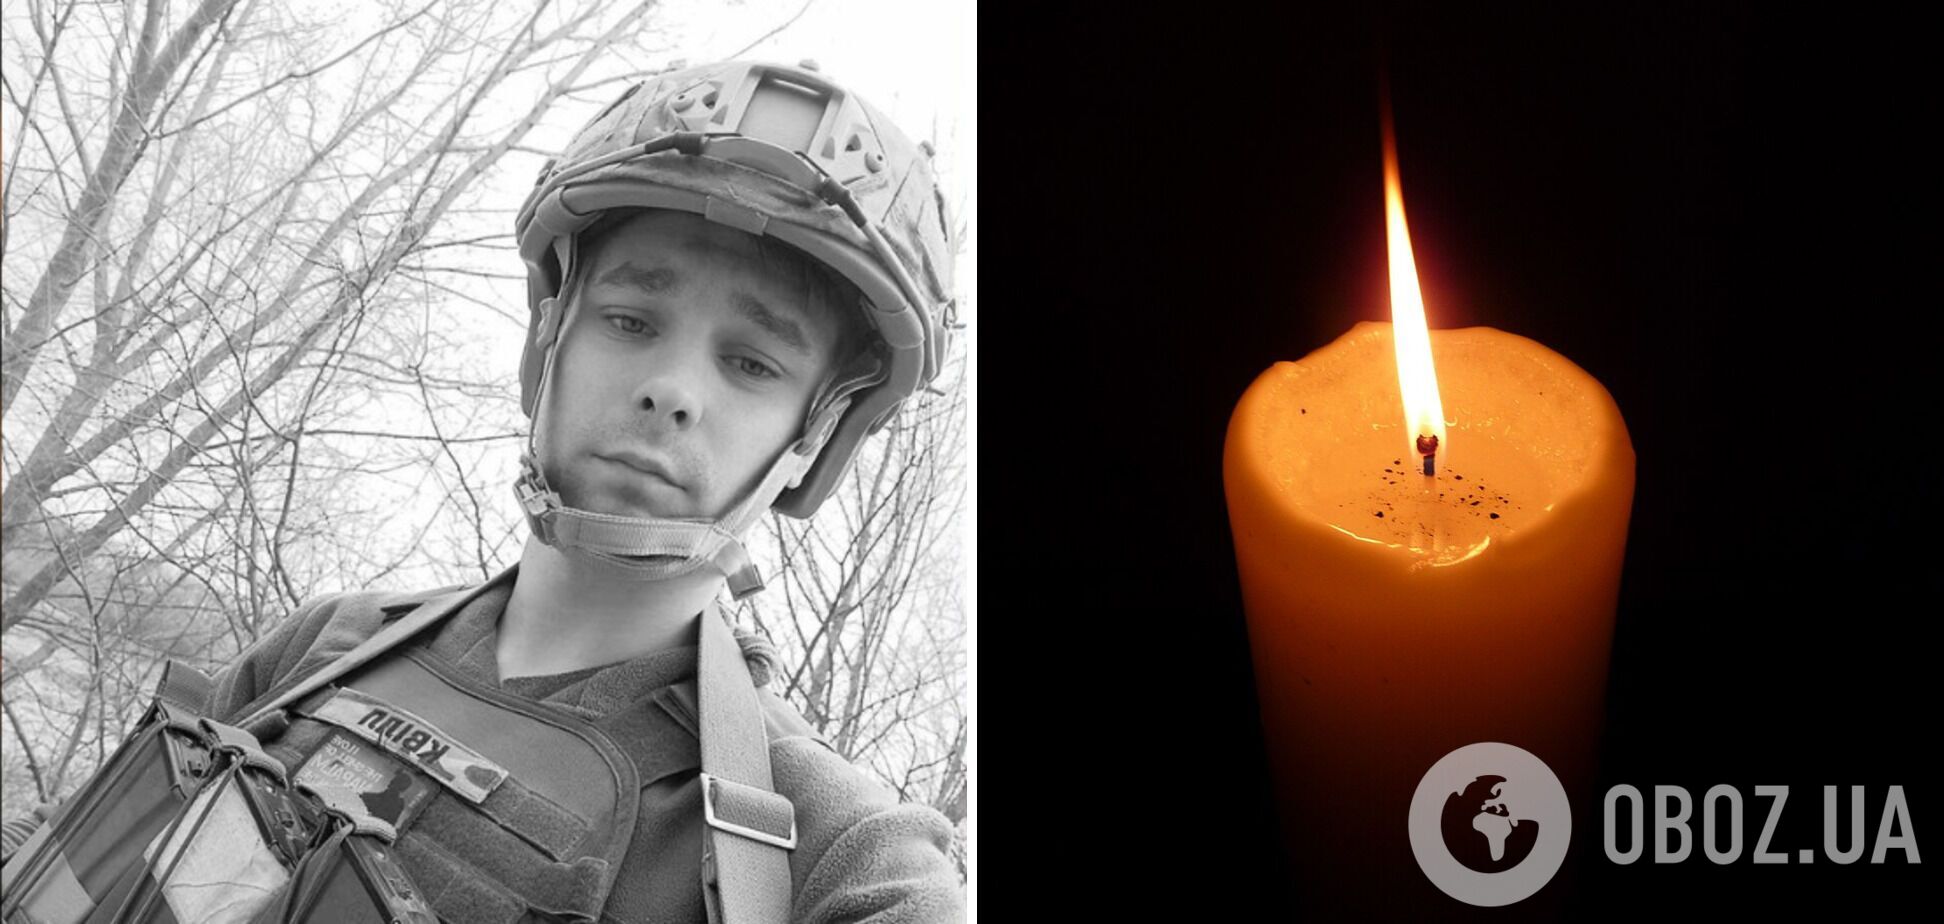 'Молоде життя обірвалося в розквіті сил': на фронті загинув 26-річний воїн з Полтавщини Павло Бовт. Фото
